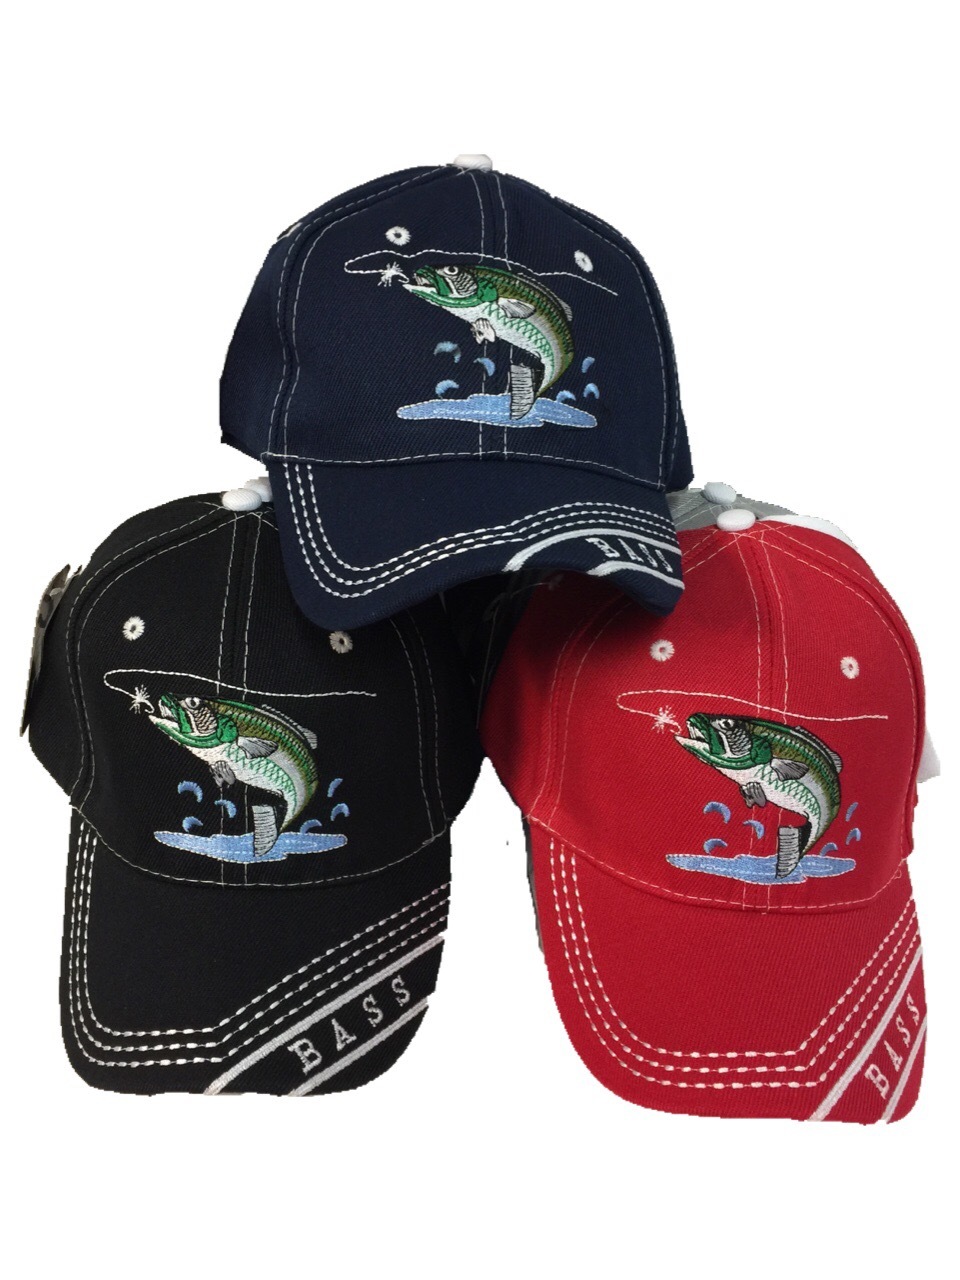 Wholesale Bass Fishing Baseball Hats